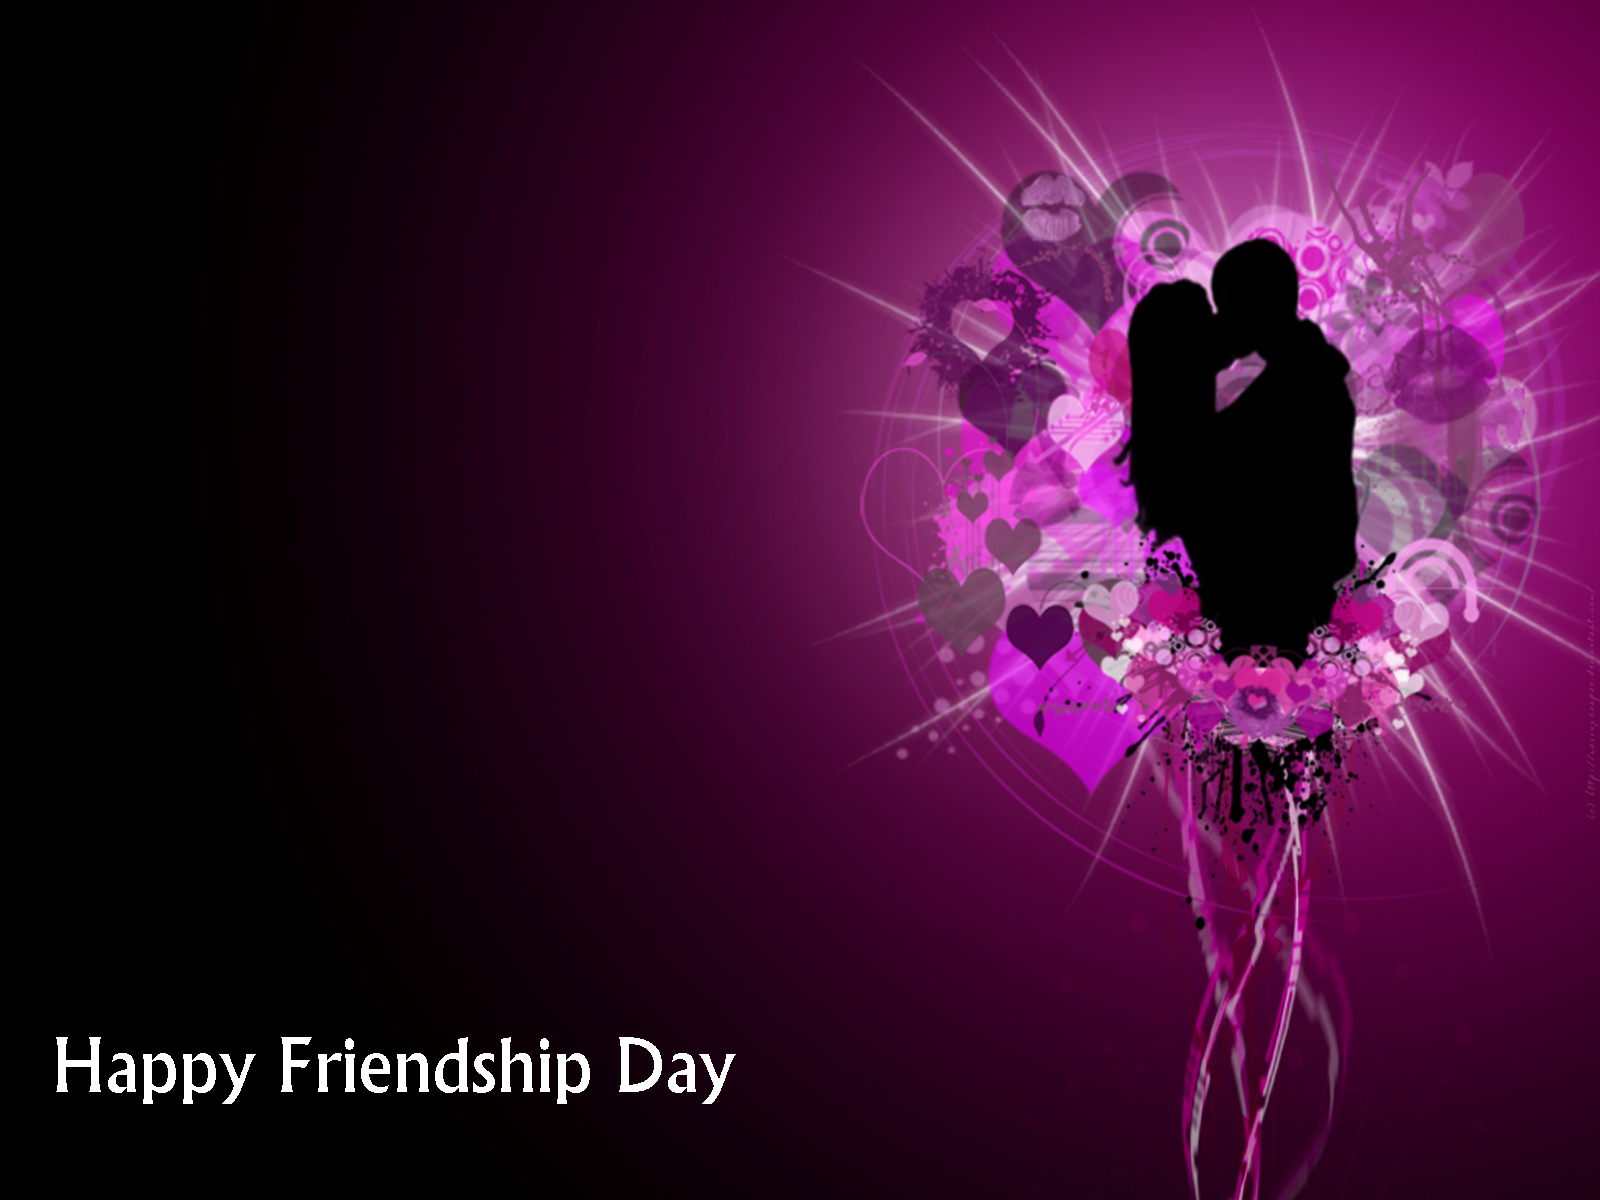 descargar fondo de pantalla de amor y amistad,violeta,púrpura,diseño gráfico,amor,día de san valentín